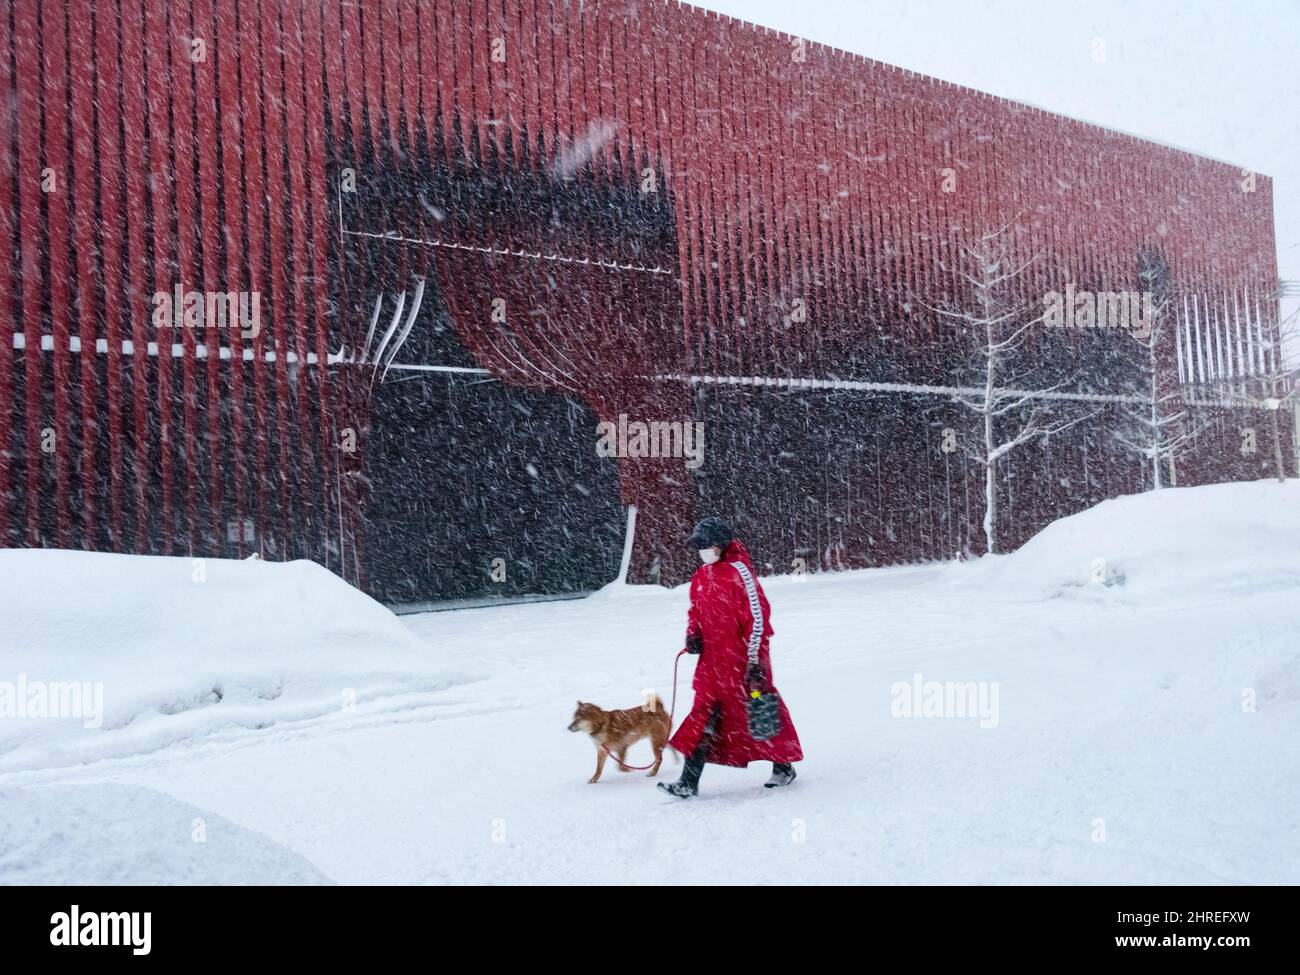 Frau, die mit Hund vor dem Nebuta Museum WA-RASSE, einem einzigartigen Gebäude mit roten Metalllatten, Aomori, Präfektur Aomori, Japan, läuft Stockfoto